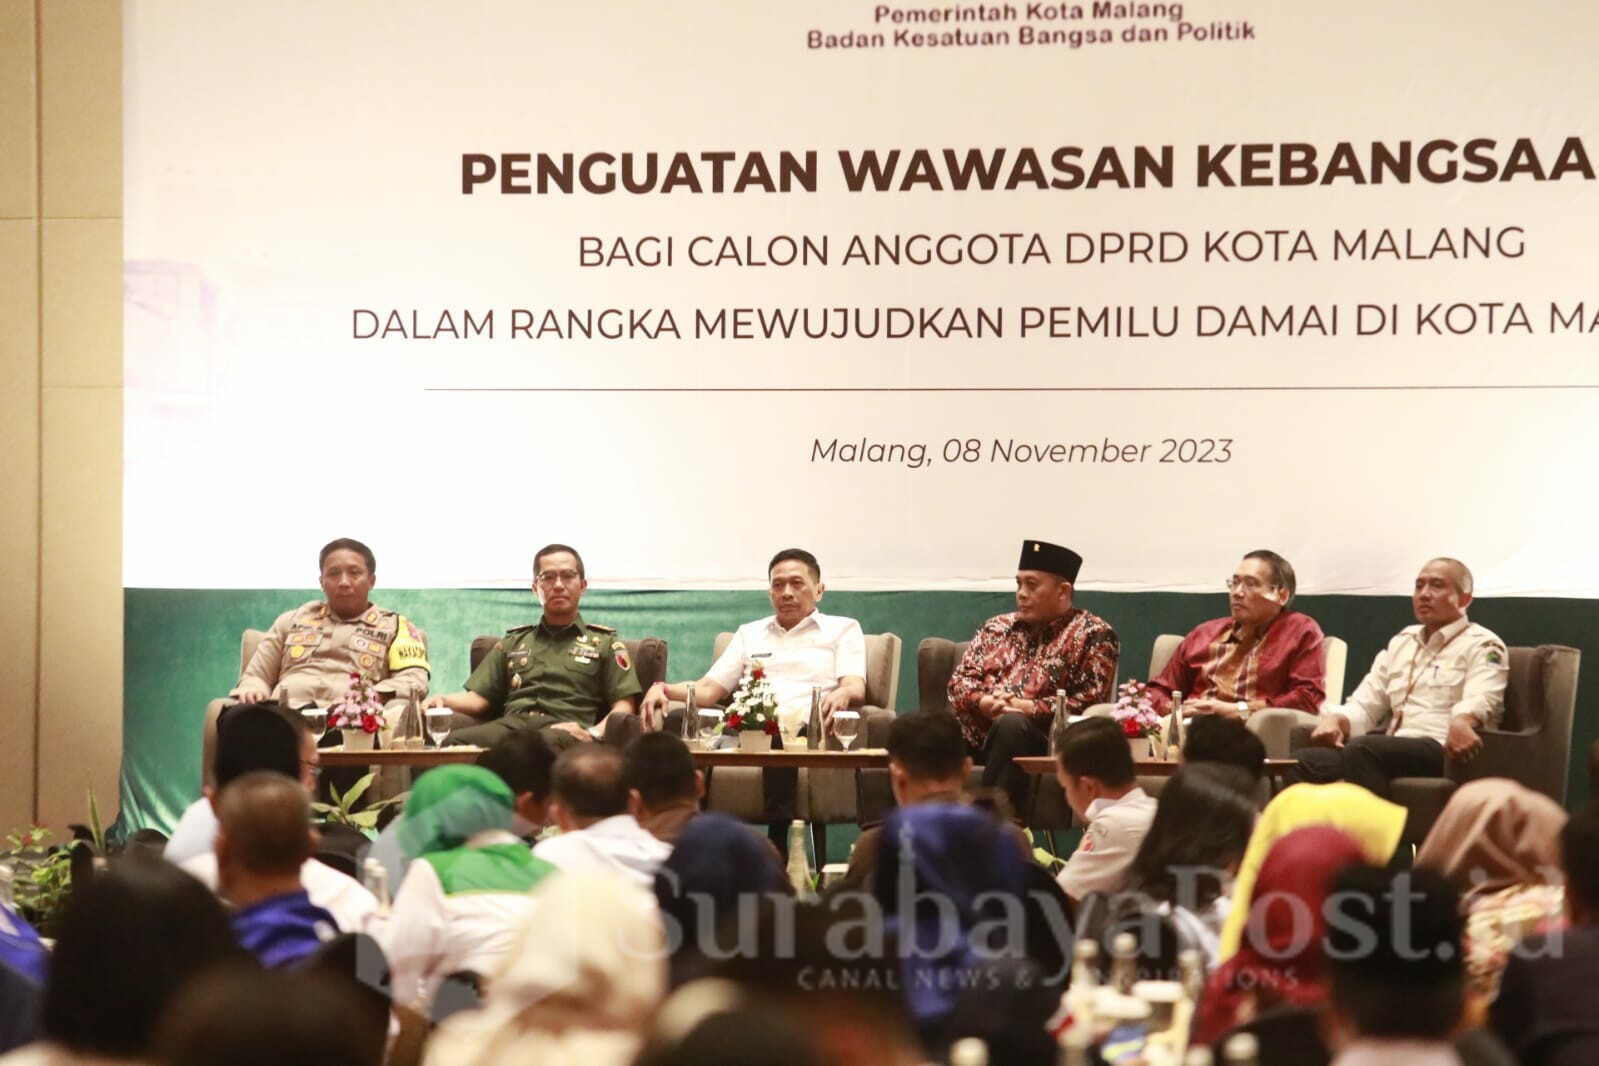 Jelang pesta demokrasi pada 2024 mendatang, Pj. Walikota Malang, Dr. Ir. Wahyu Hidayat, M.M memberikan penguatan wawasan kebangsaan kepada seluruh calon anggota DPRD di Kota Malang